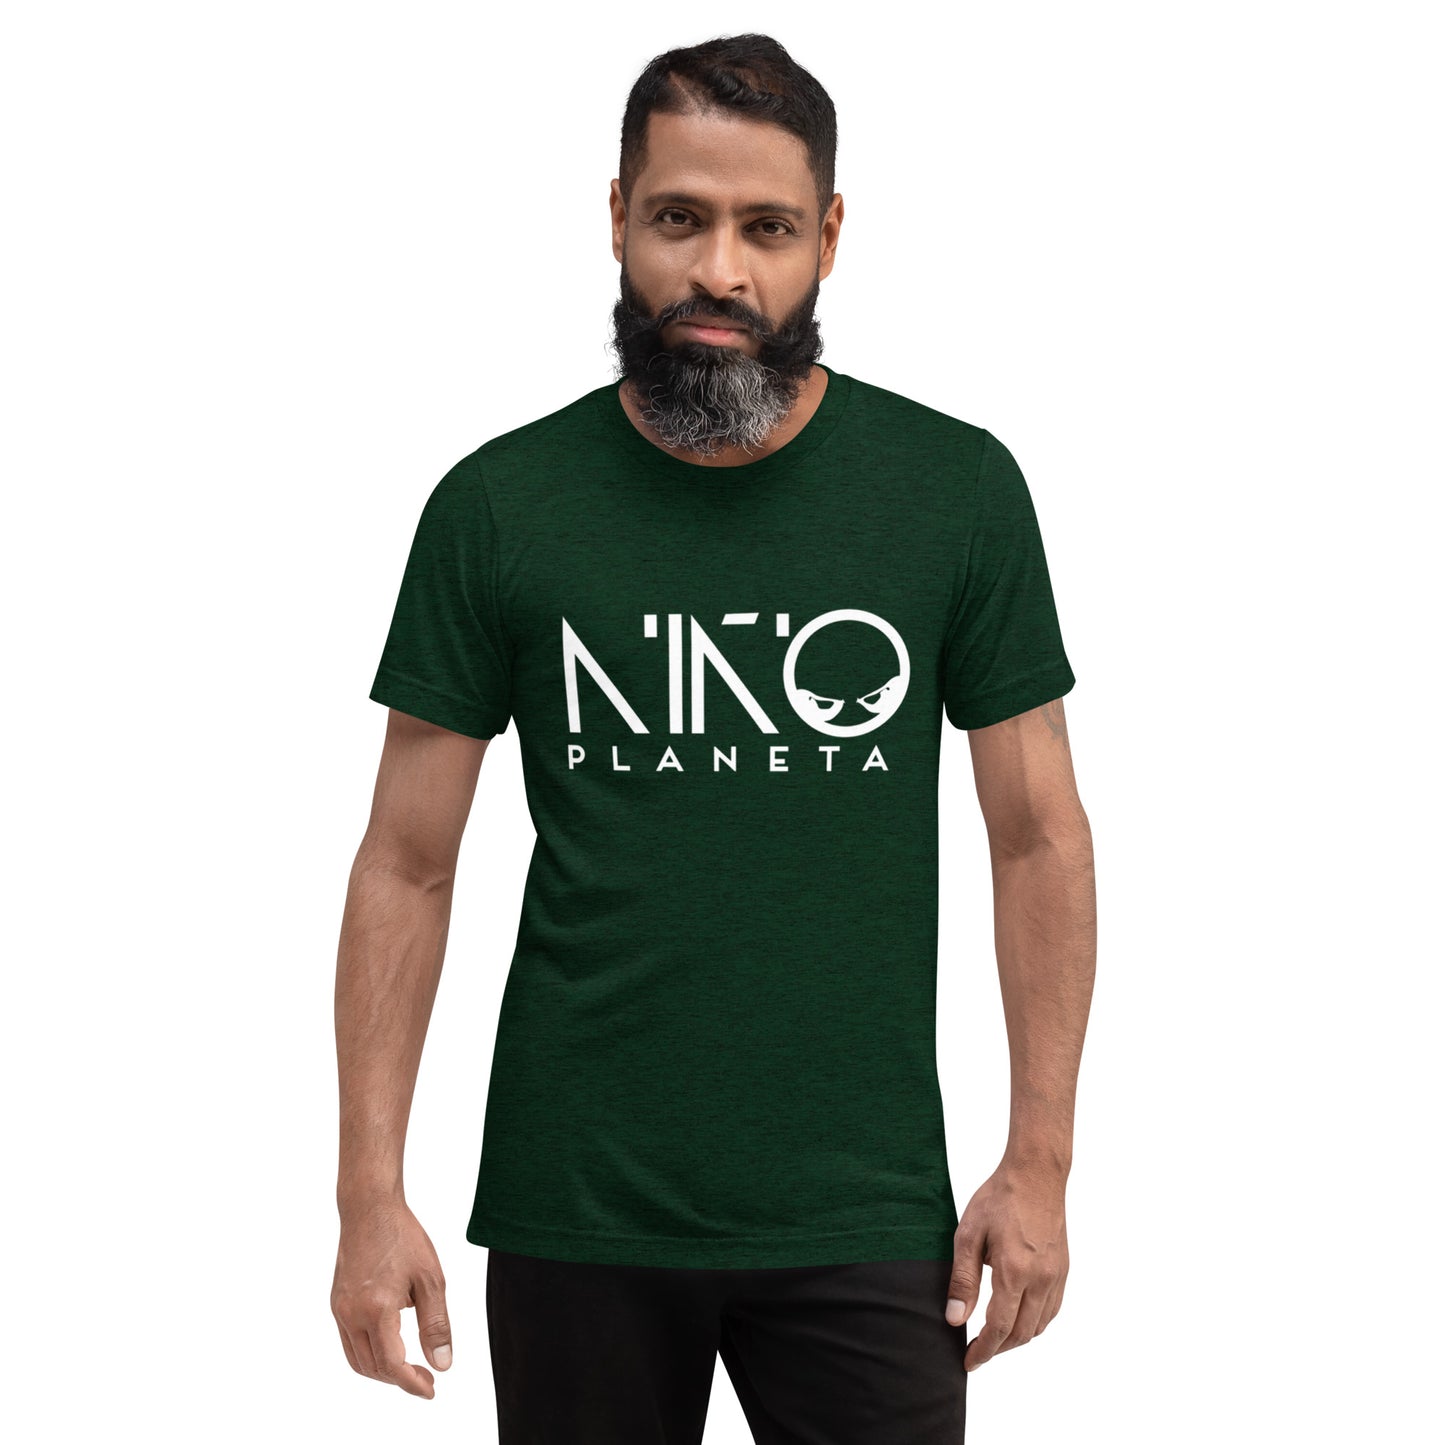 Niño Planeta Short sleeve t-shirt